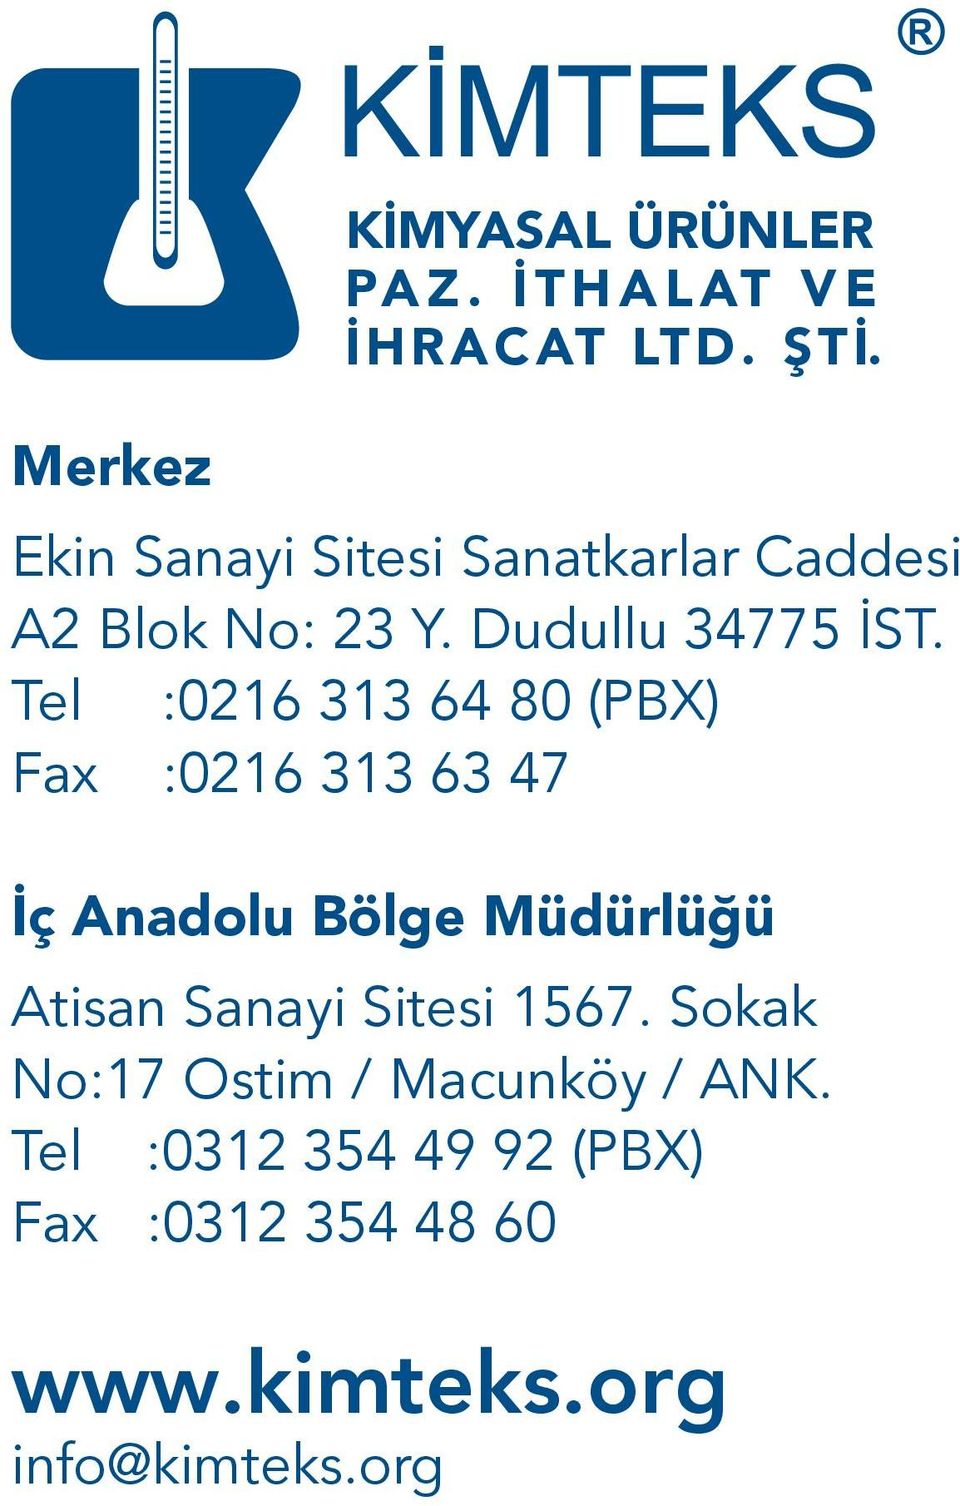 Tel :0216 313 64 80 (PBX) Fax :0216 313 63 47 İç Anadolu Bölge Müdürlüğü Atisan